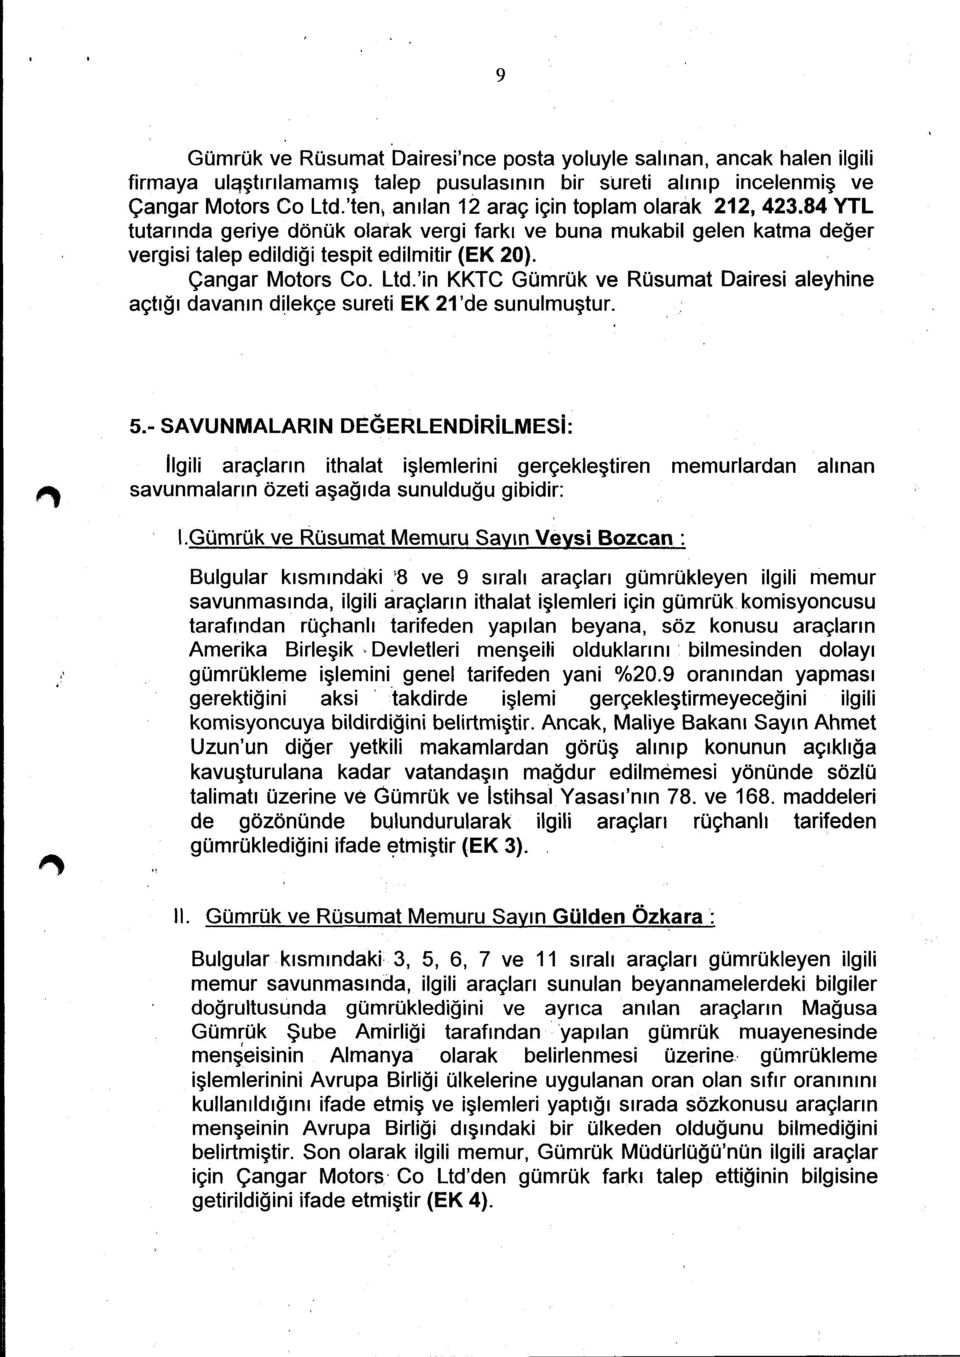 Ltd.'in KKTC Gümrük ve Rüsumat Dairesi aleyhine açtığı davanın dilakçe sureti EK 21 'de sunulmuştur. 5.